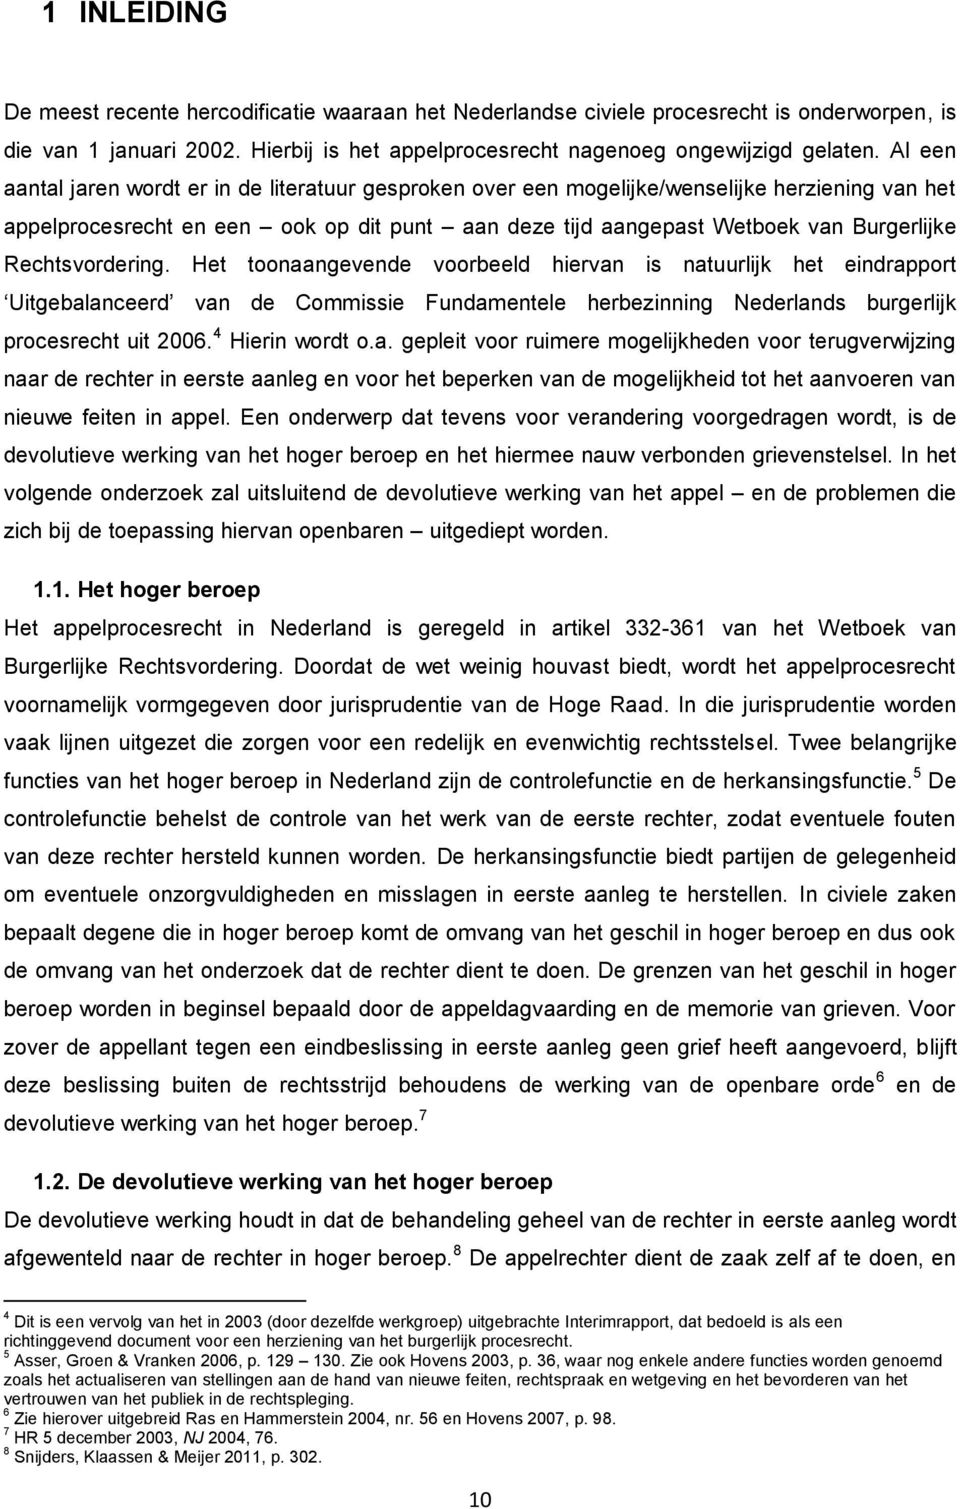 Rechtsvordering. Het toonaangevende voorbeeld hiervan is natuurlijk het eindrapport Uitgebalanceerd van de Commissie Fundamentele herbezinning Nederlands burgerlijk procesrecht uit 2006.